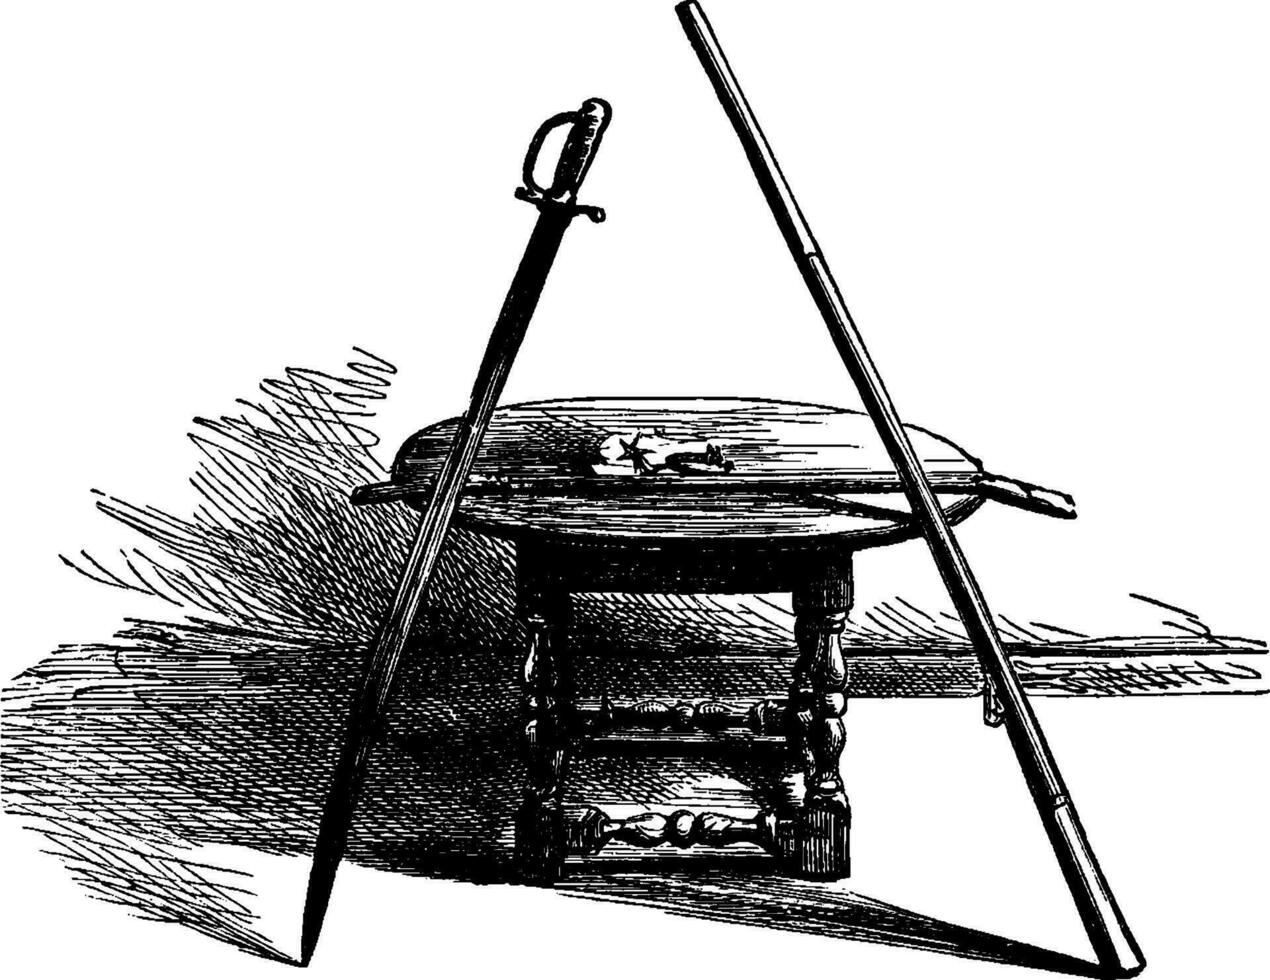 standish's svärd och musköt fat, vintage illustration vektor